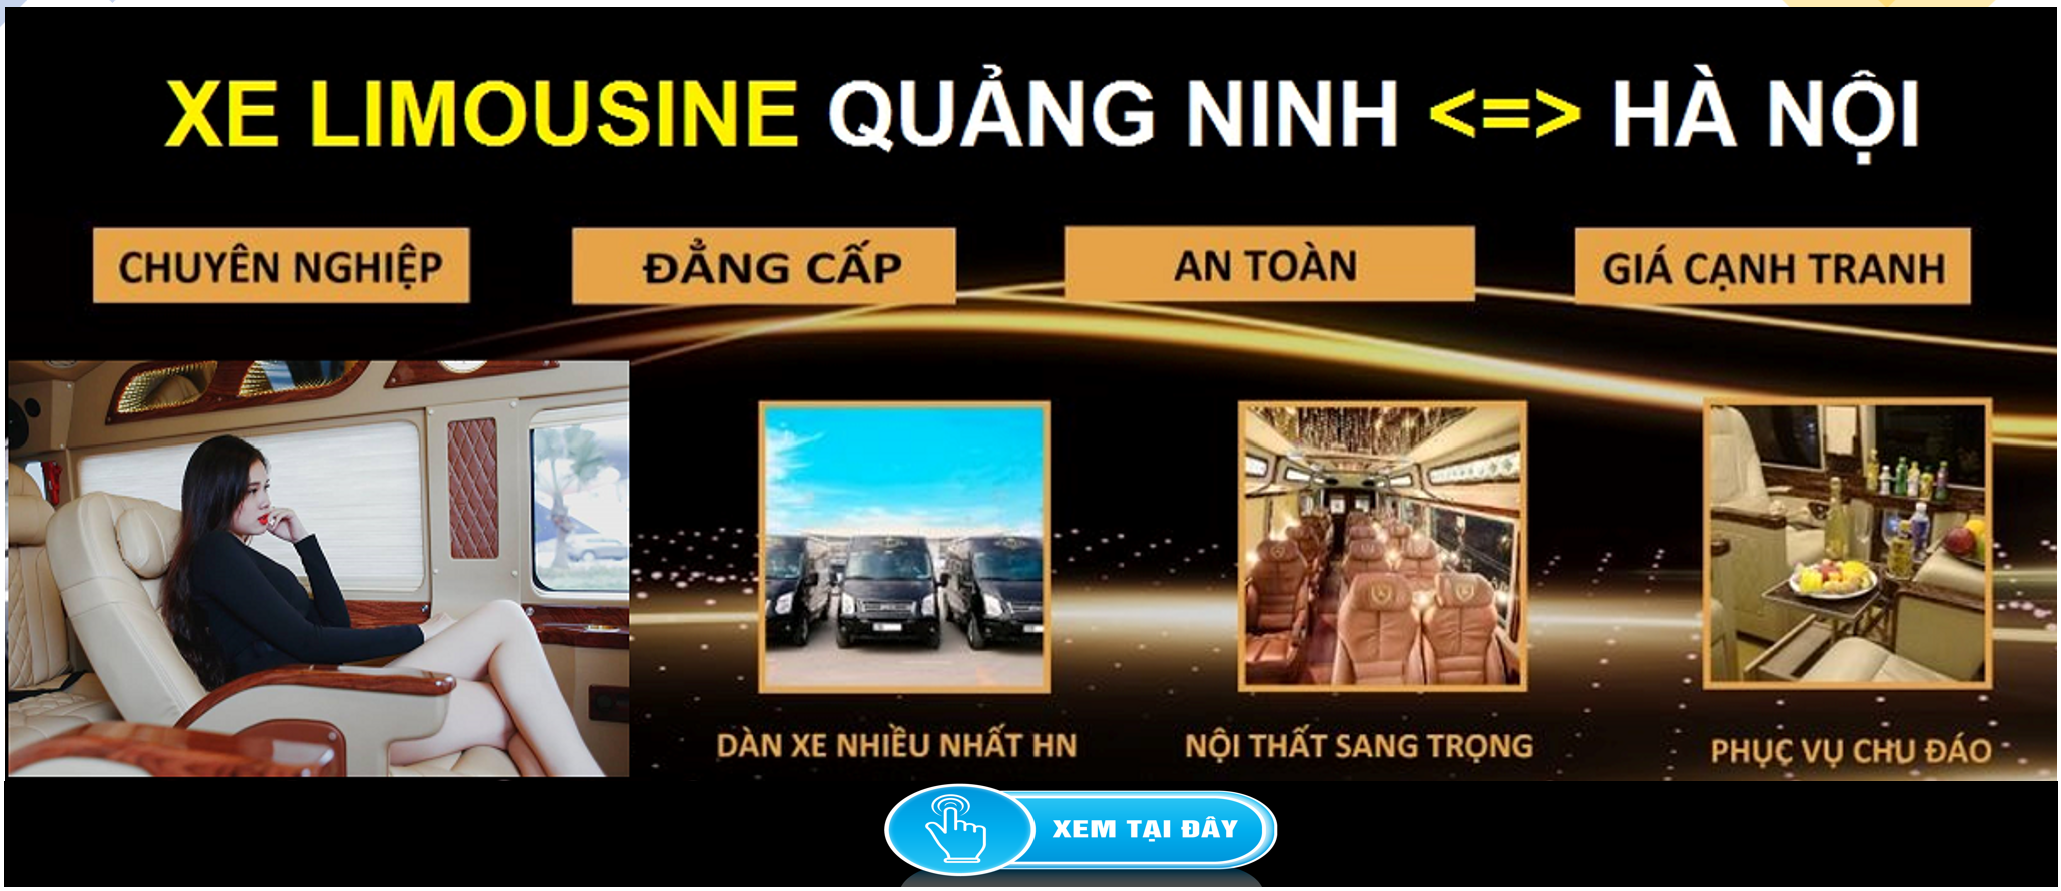 Xe Limousine Ha Noi Quang Ninh dua don tai nha 1d - Giới thiệu chuyên trang Giaxeoto247.com